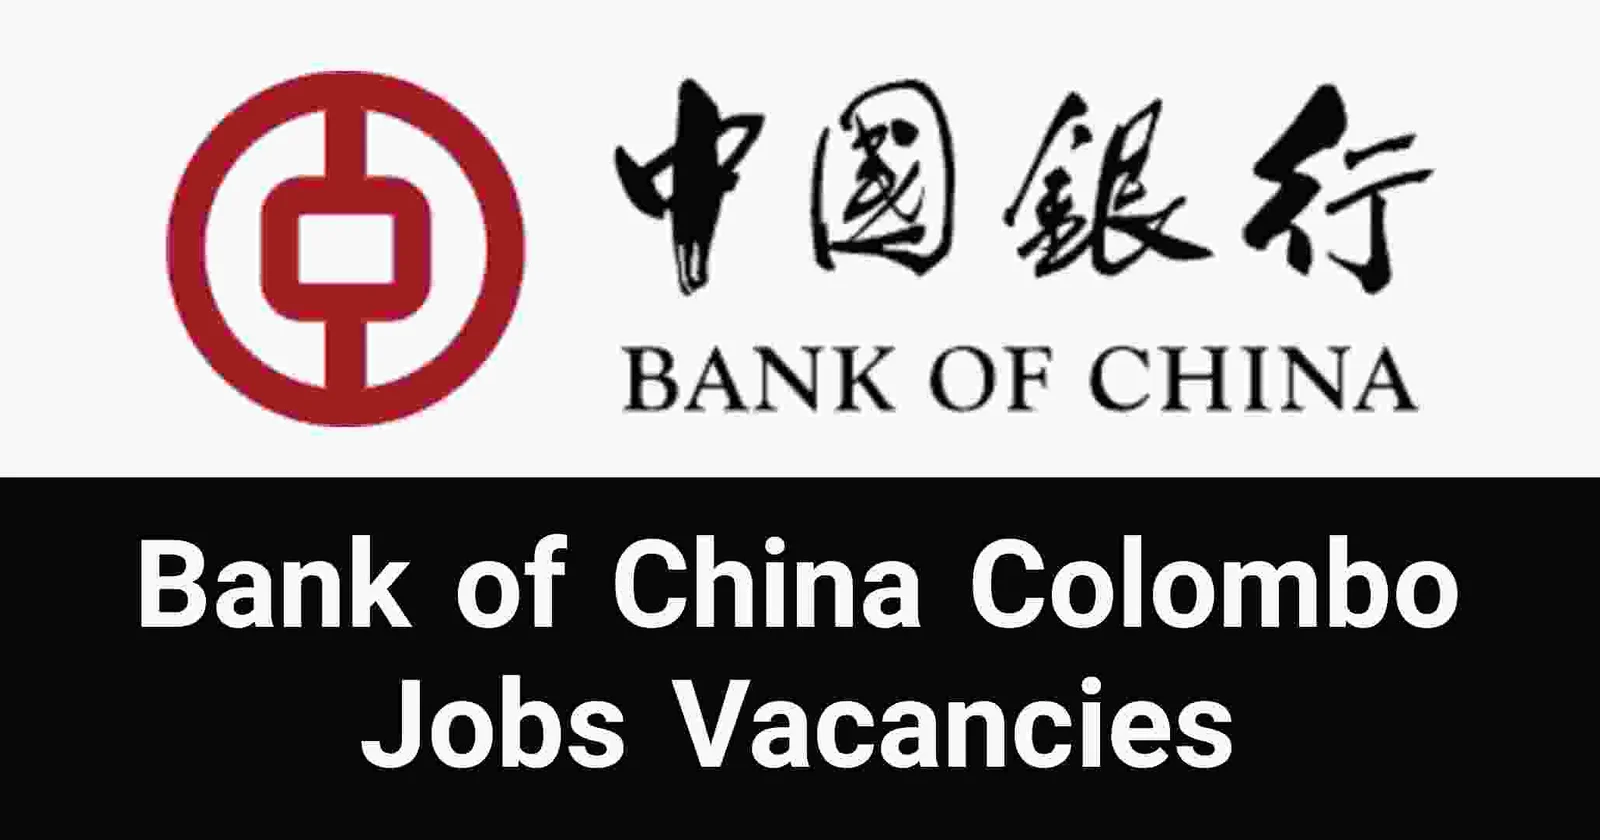 Bank of China Colombo Jobs Vacancies